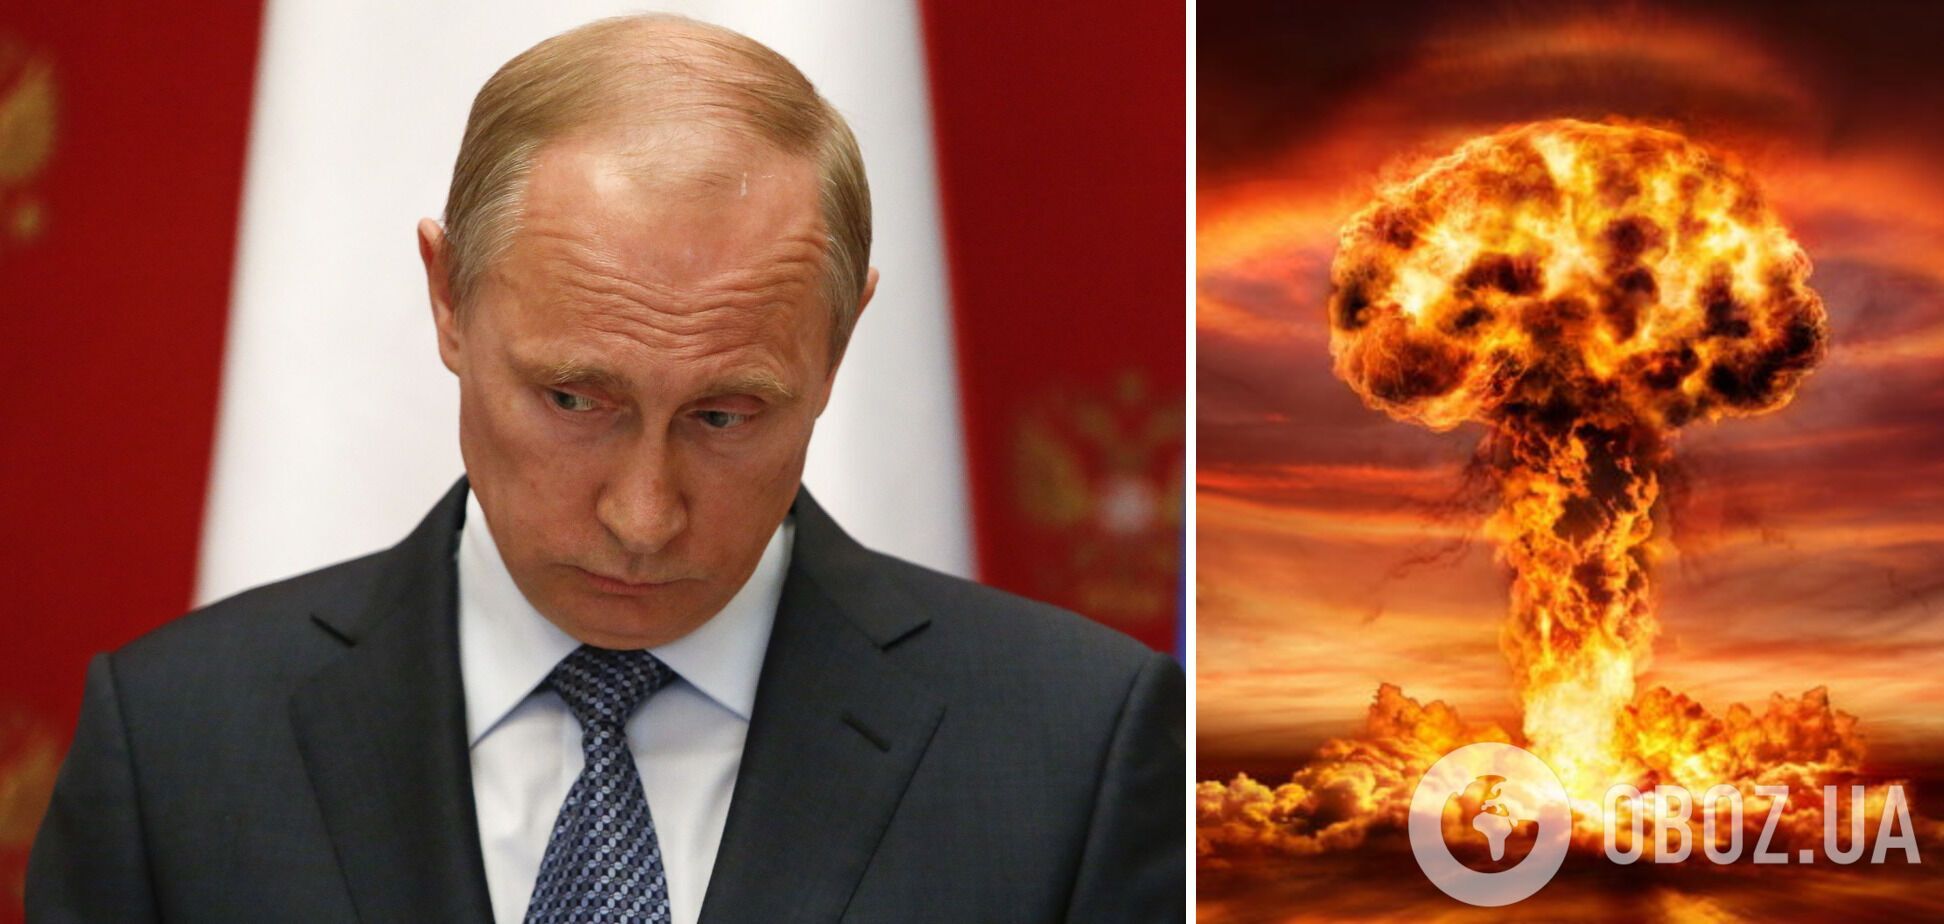 Путін має план щодо застосування ядерної зброї, але оточення йому не дозволить цього зробити